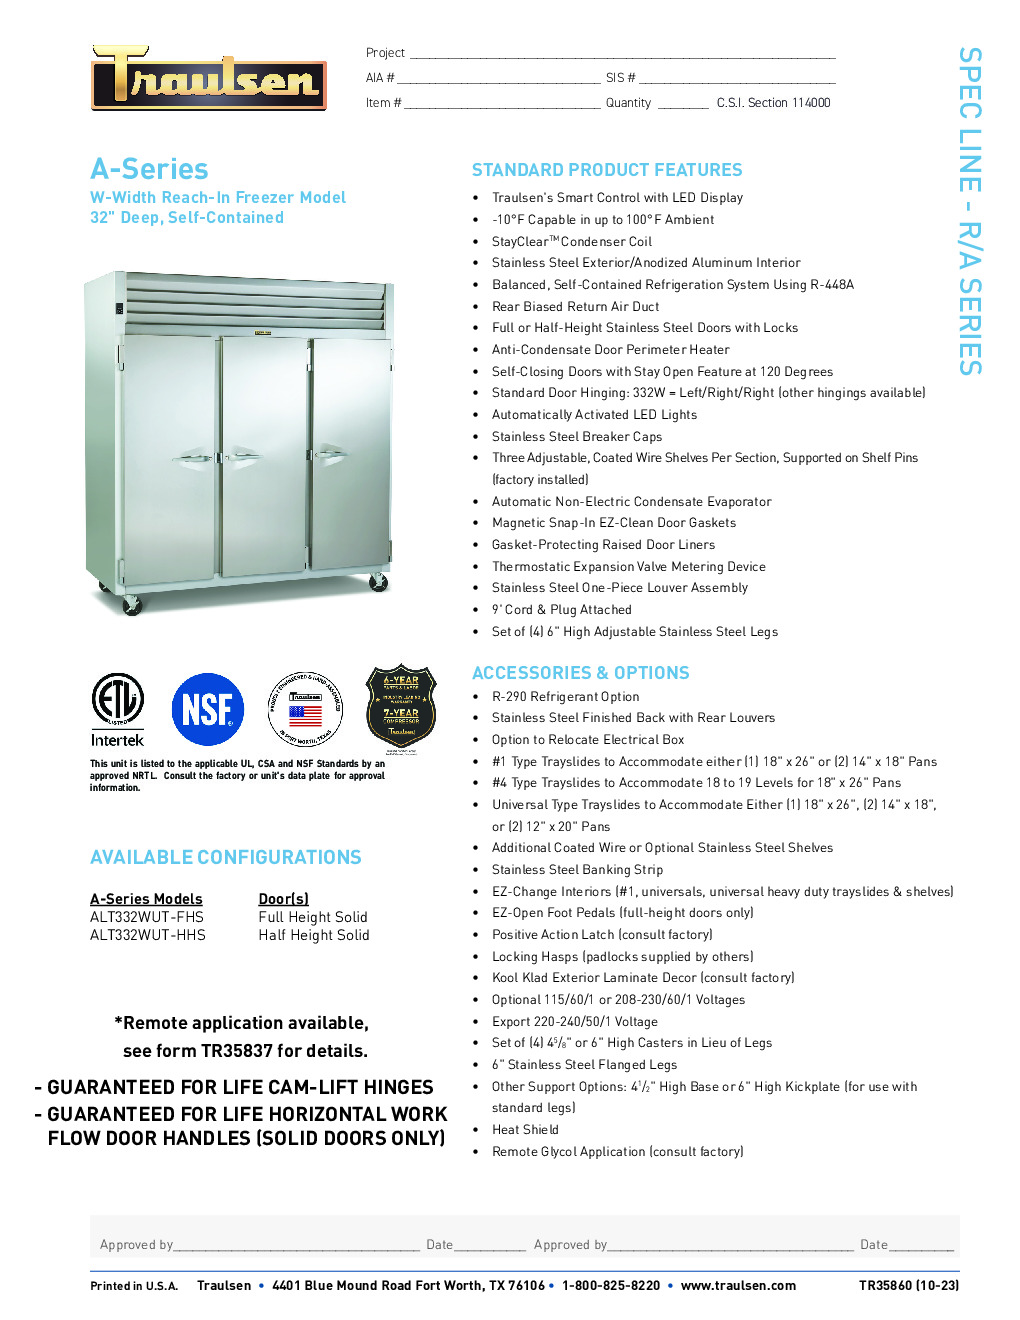 Traulsen ALT332WUT-FHS Reach-In Freezer